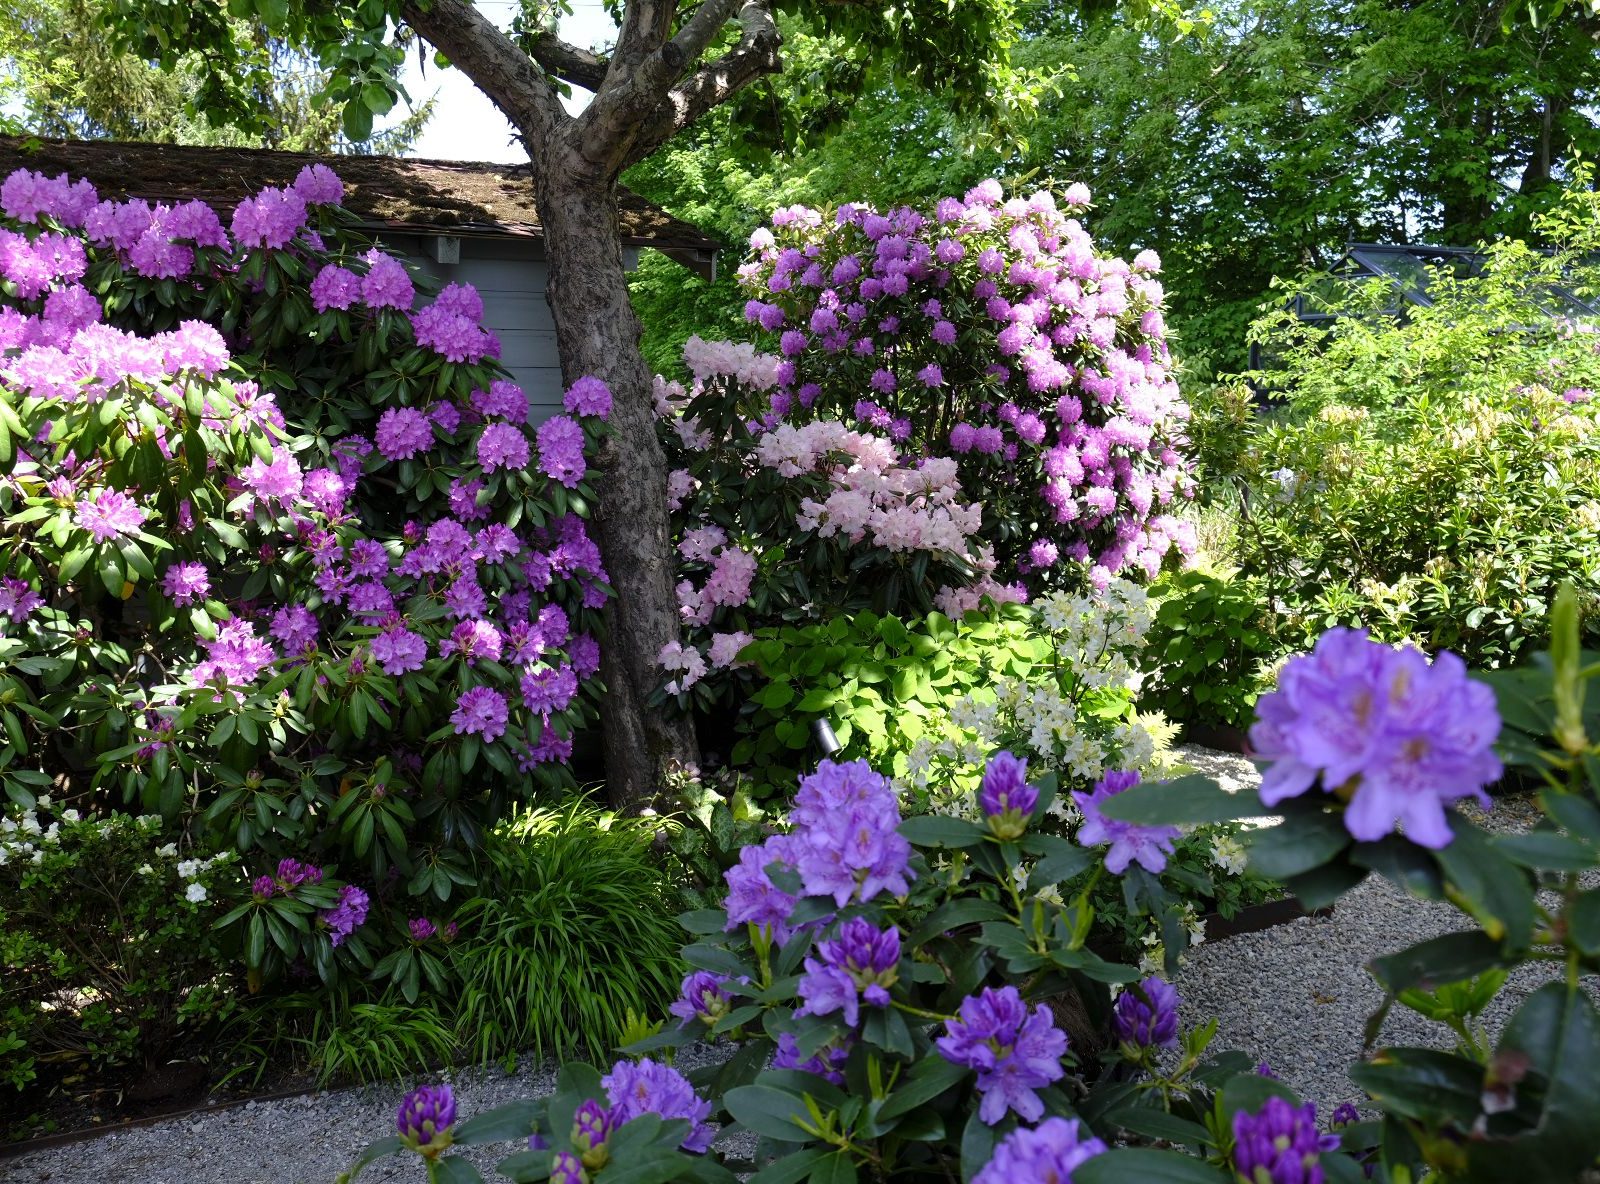 Rhododendron im Englischen Garten